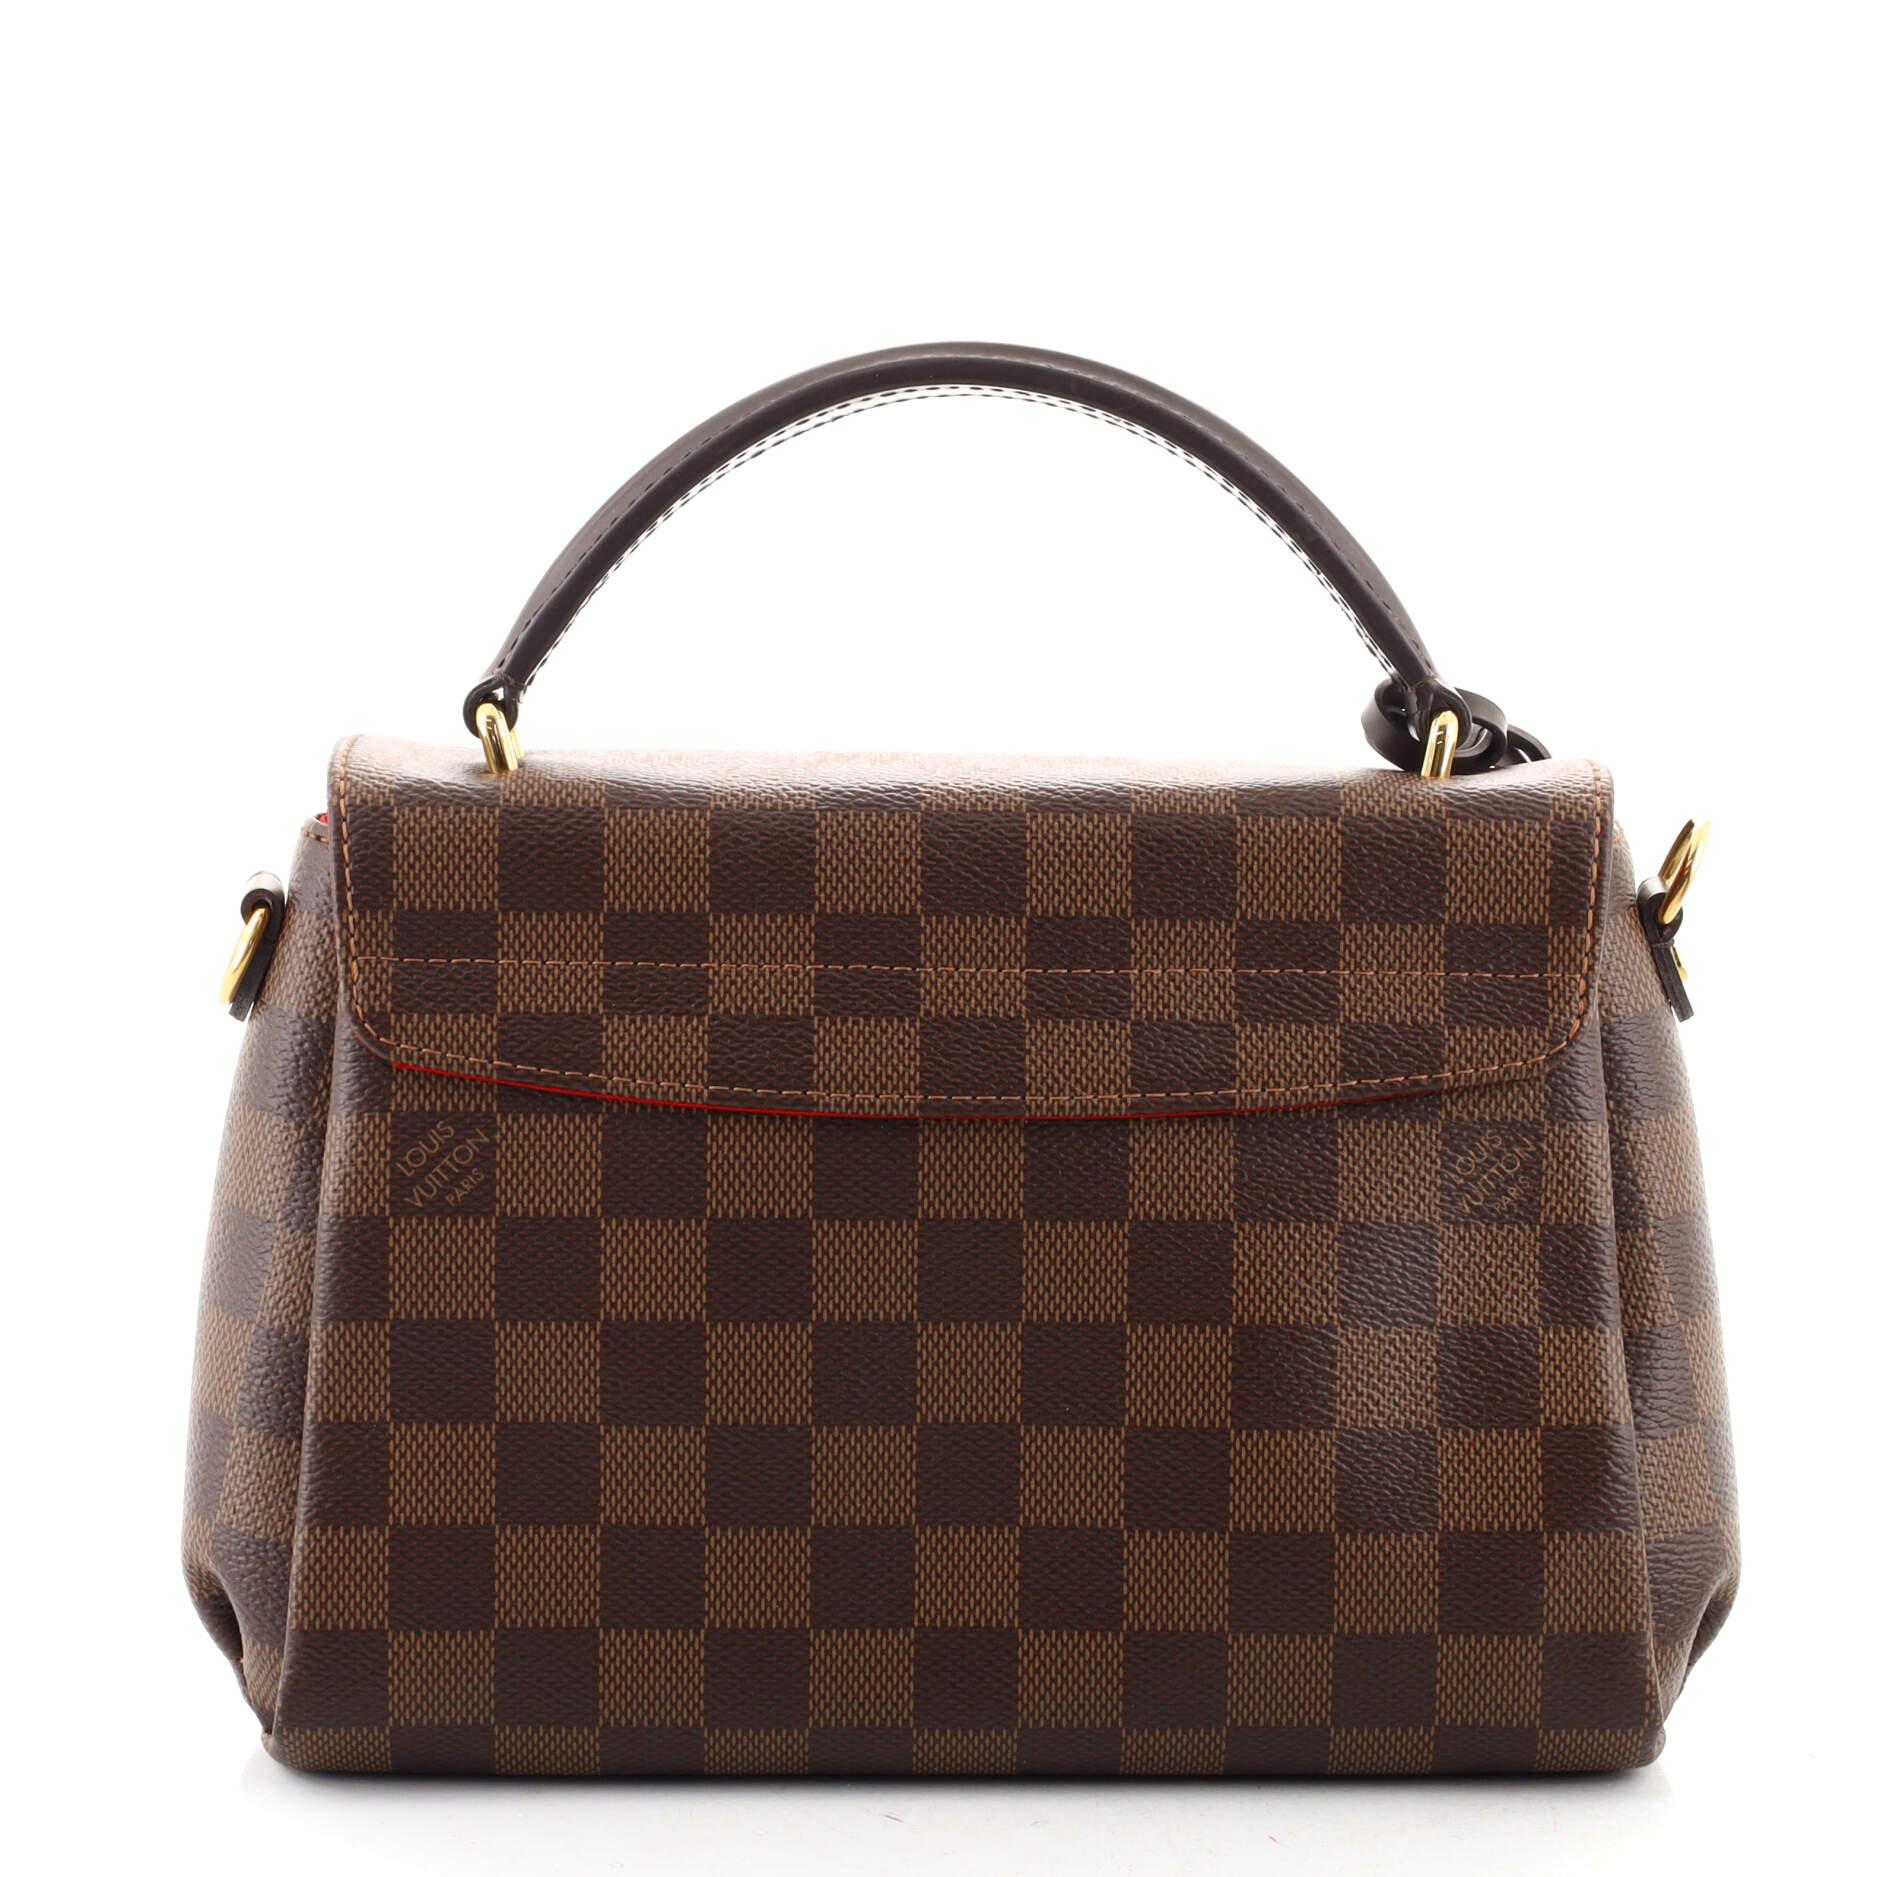 Black Louis Vuitton Croisette Handbag Damier